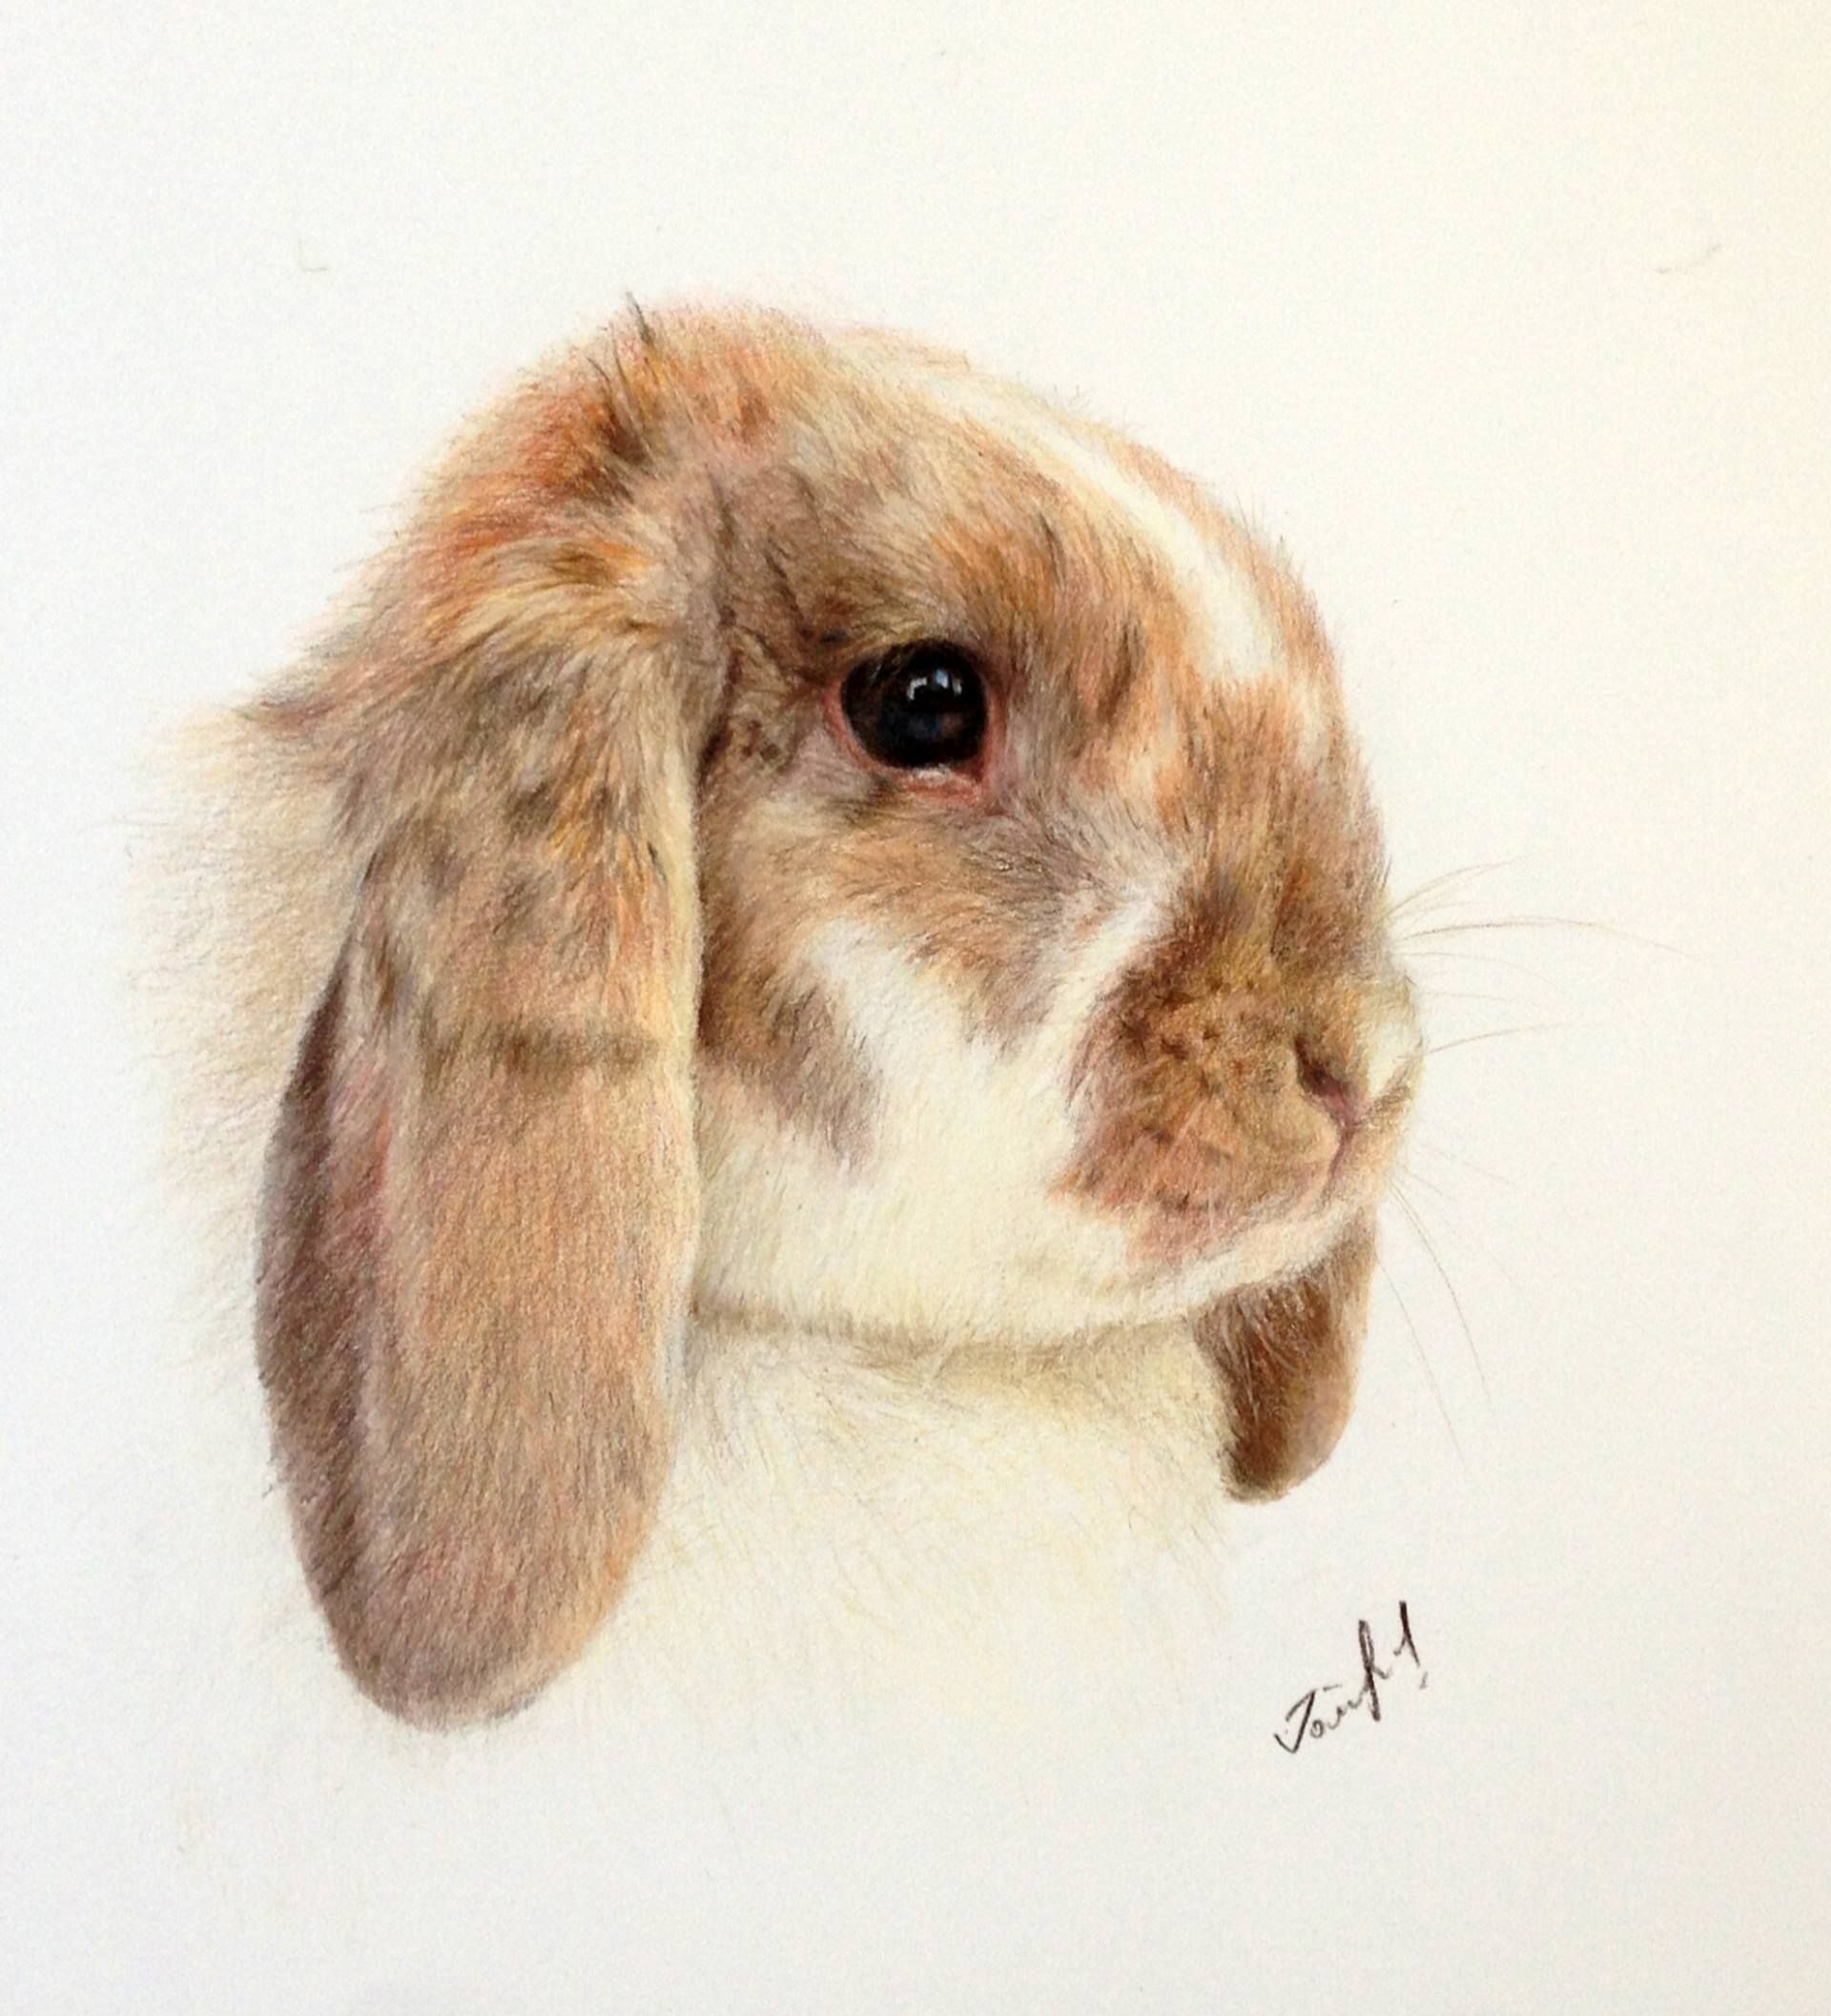 Фото как нарисовать кролика